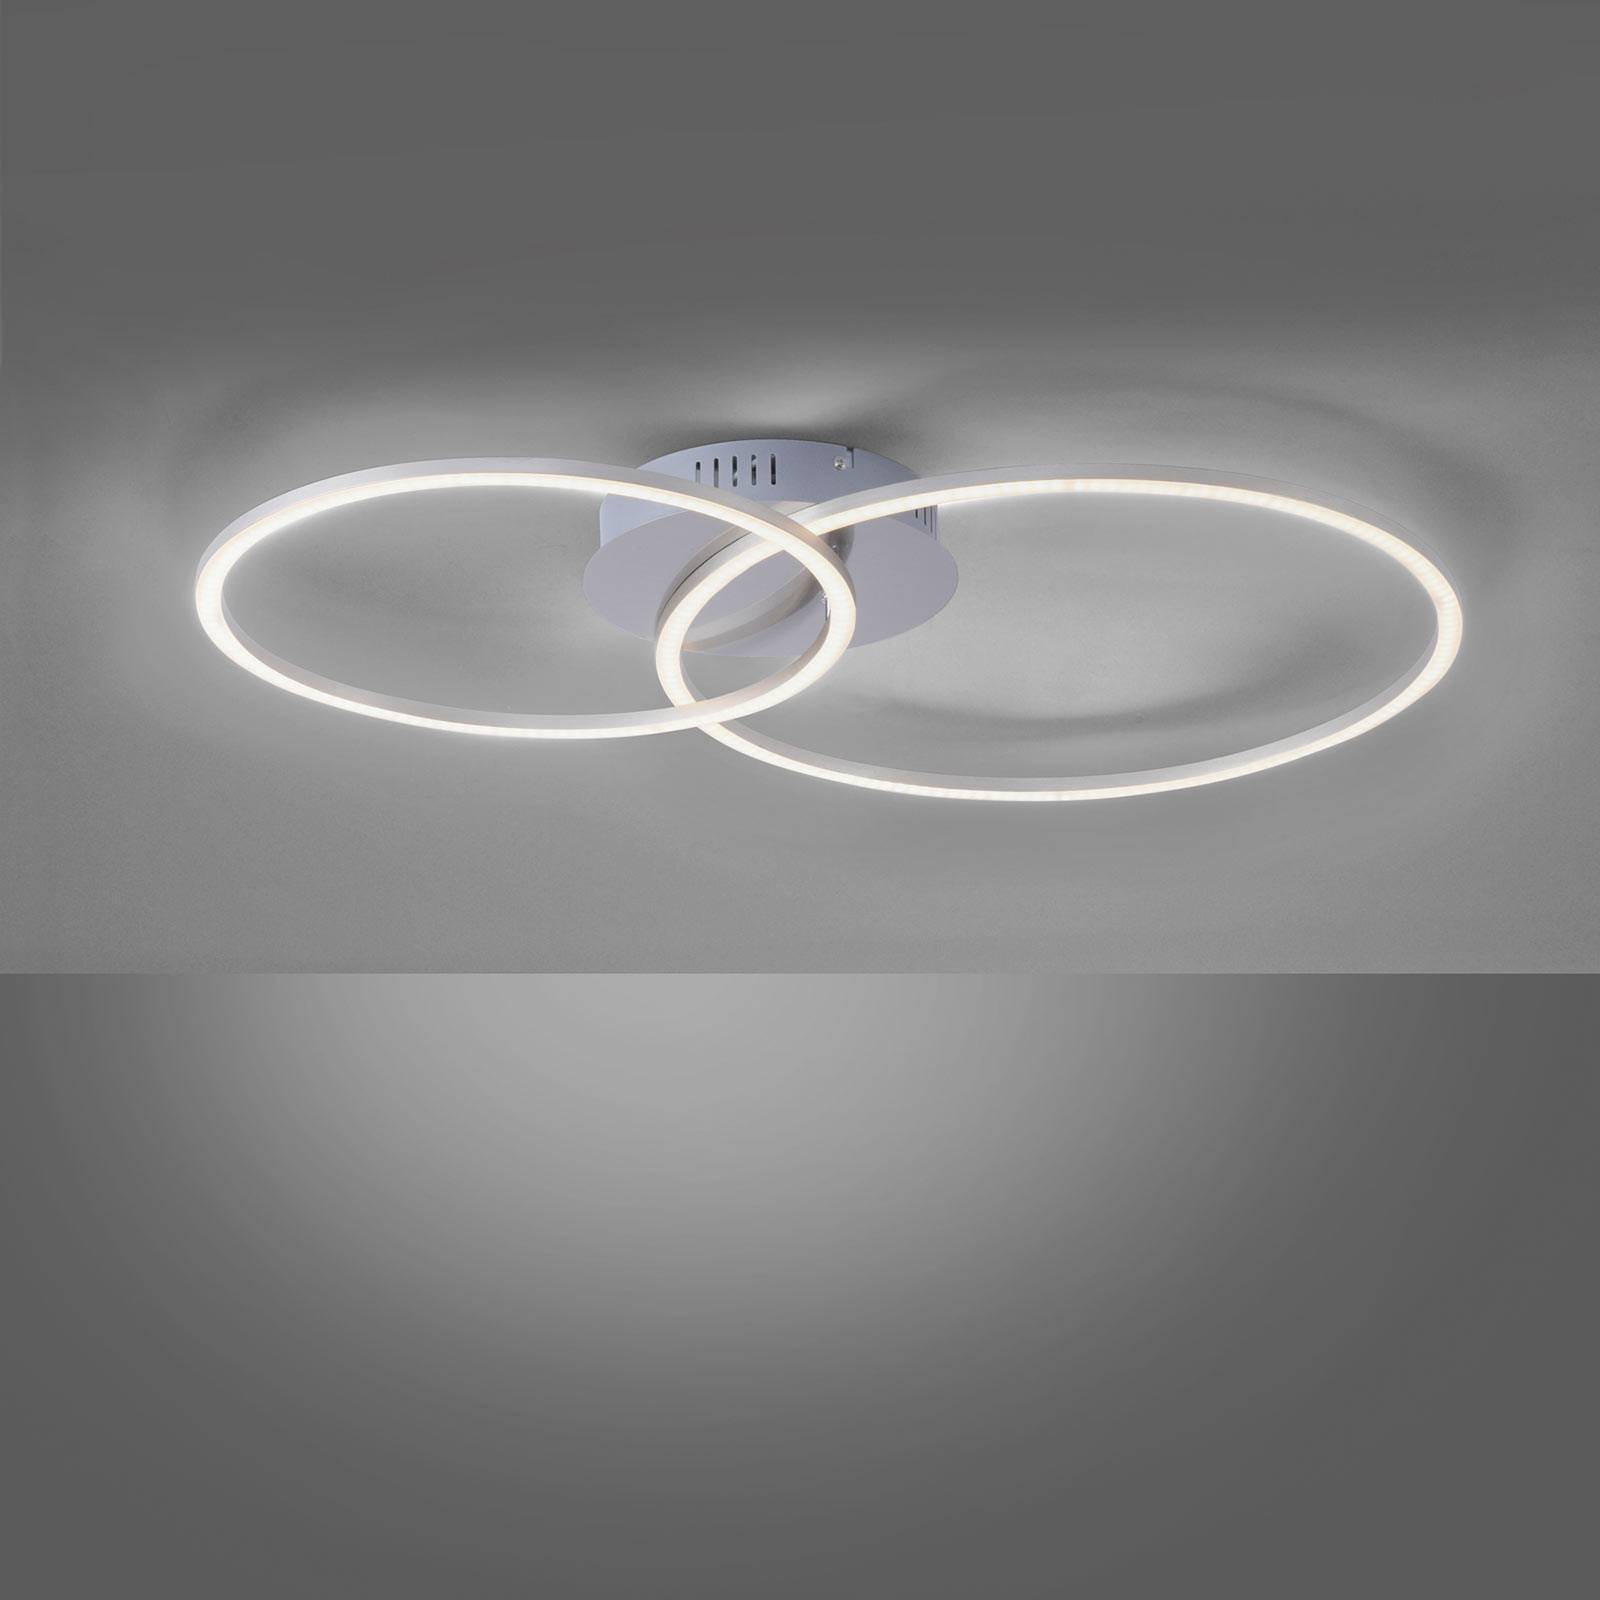 JUST LIGHT. LED stropní svítidlo Ivanka, dva kruhy, ocel